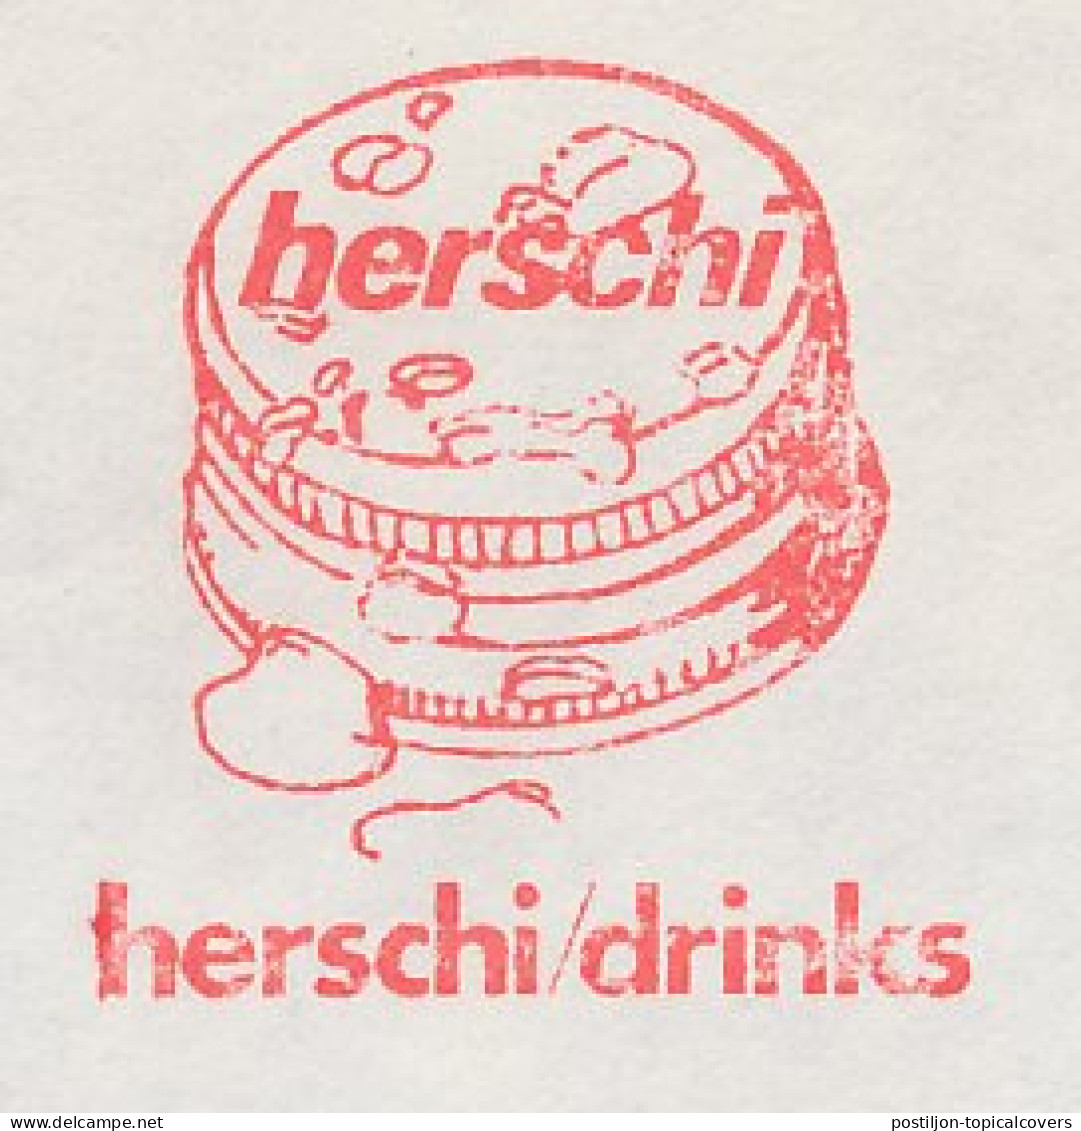 Meter Cover Netherlands 1982 Herschi Drinks - Hoensbroek - Andere & Zonder Classificatie